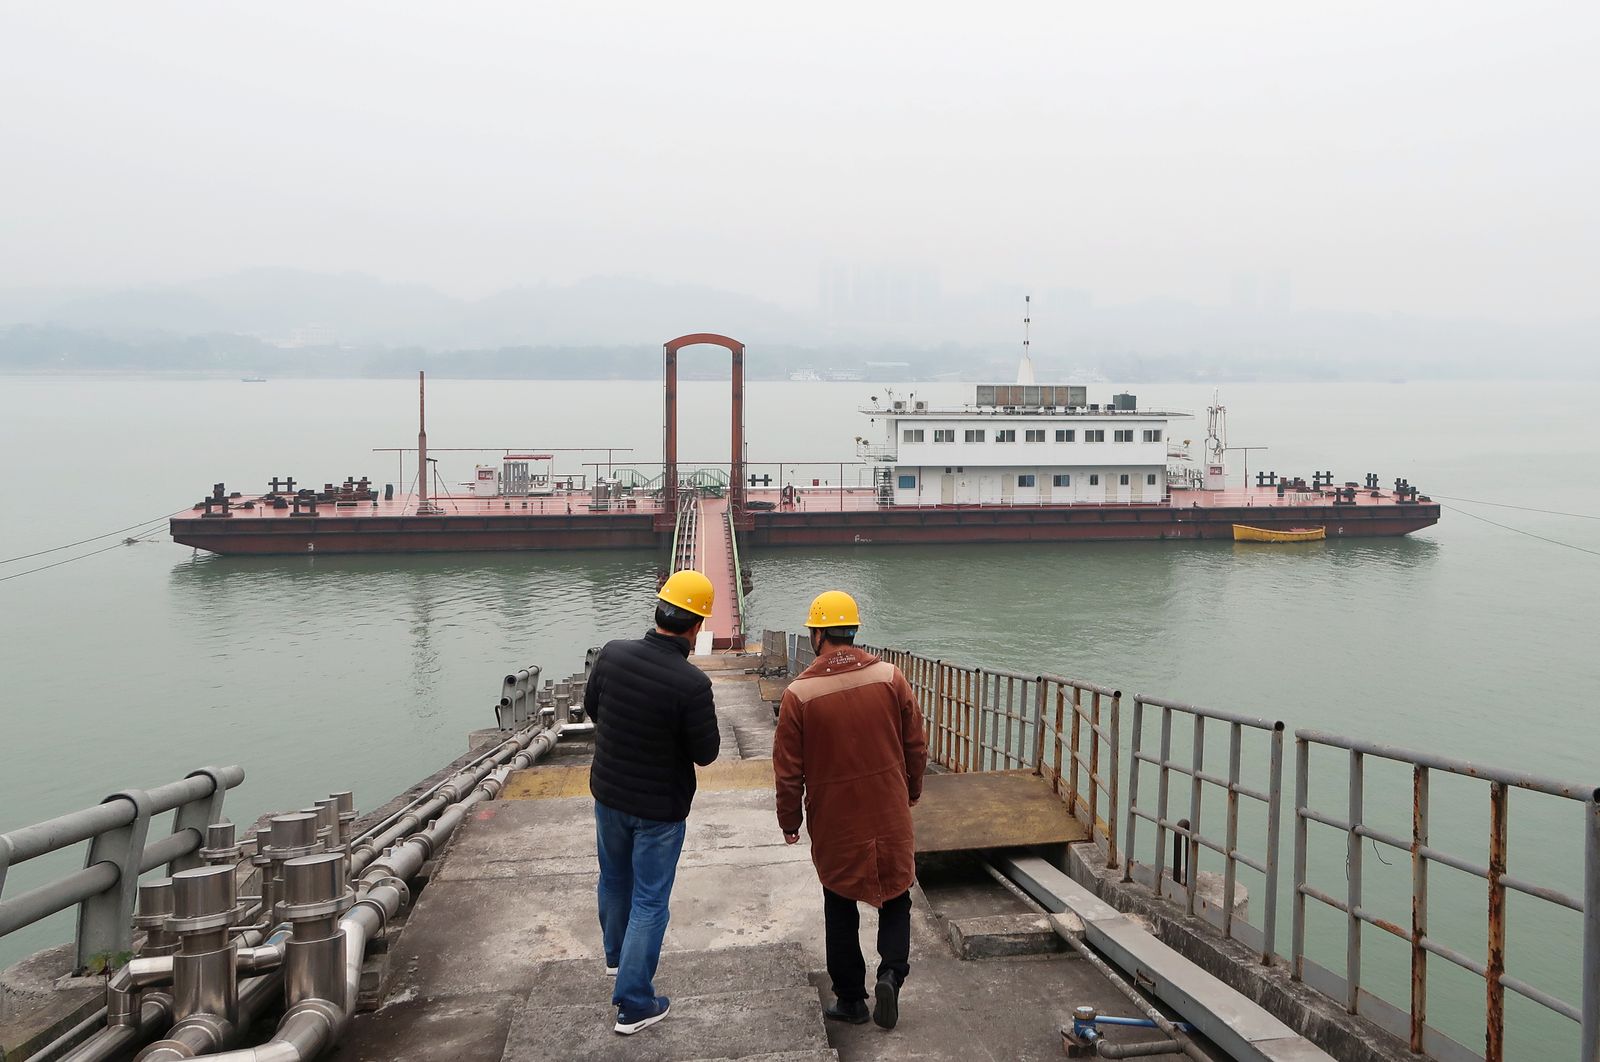 سفينة تصل إلى محطة للتزود بالغاز الطبيعي المسال في مدينة تشونجتشينج الصينية. 12 ديسمبر 2017 - REUTERS